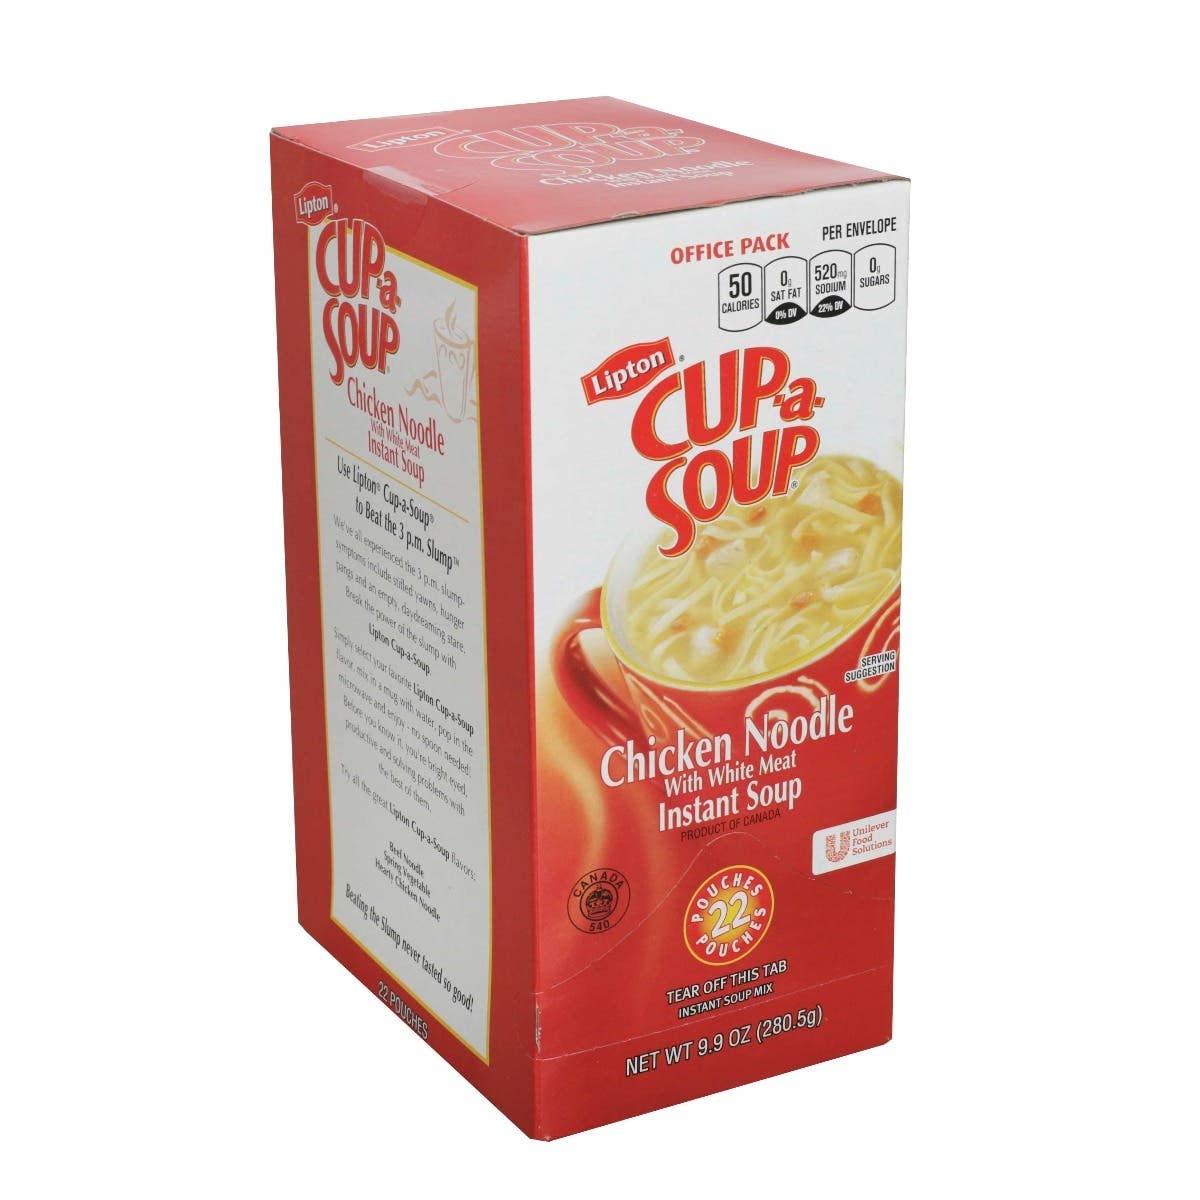 Lipton Cup-a-Soup Instant Chicken Noodle Soup - 22 envelopes per box, 4 boxes per case